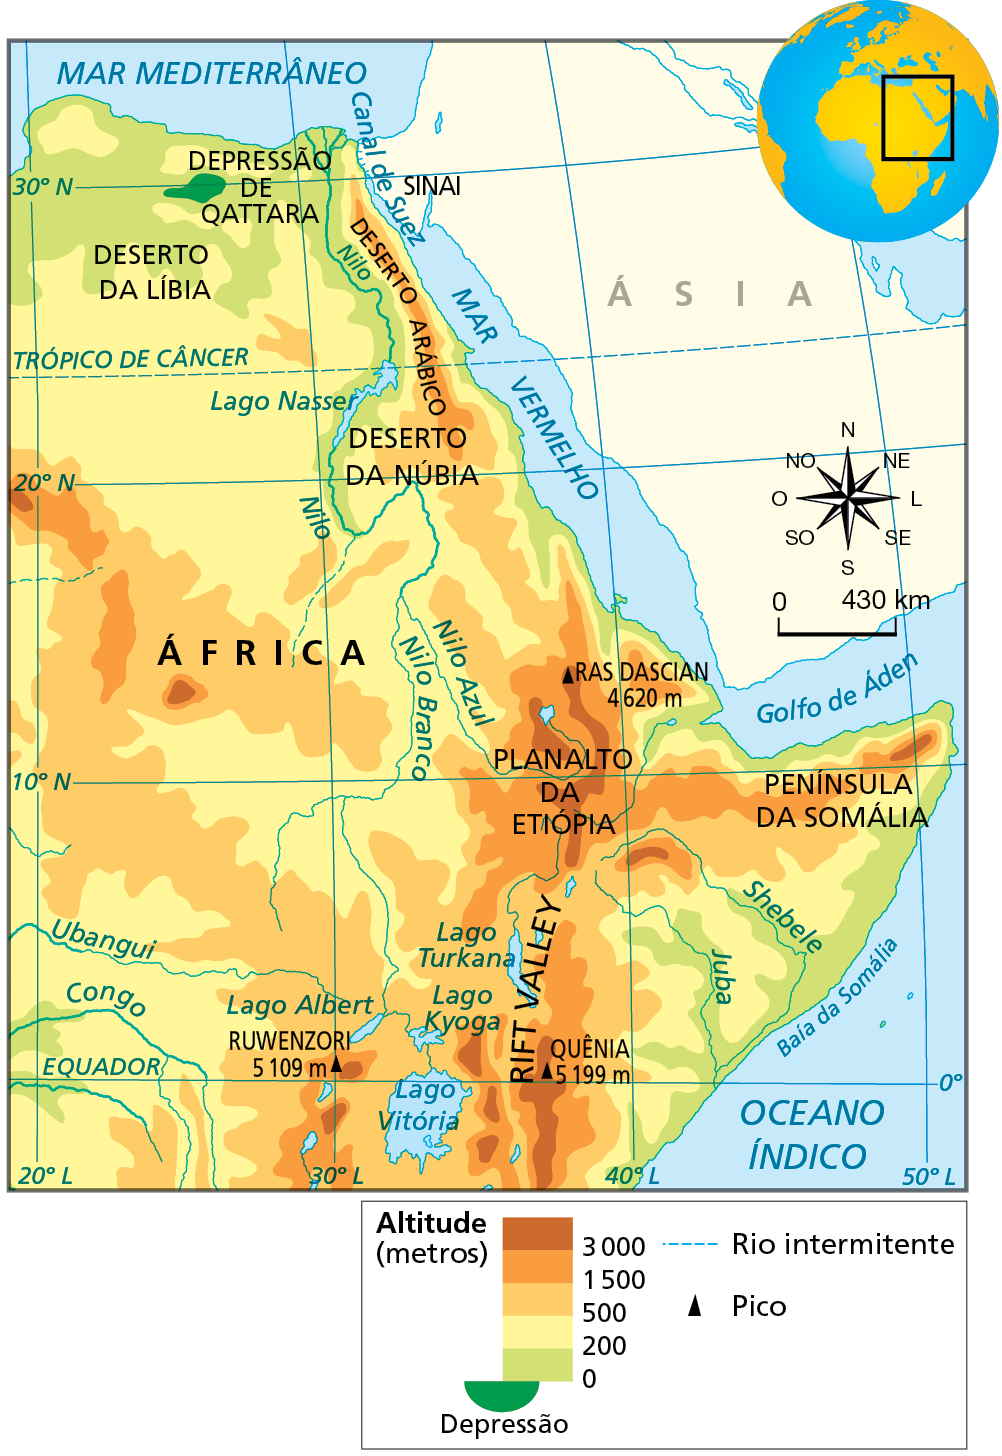 Mapa. África: curso do Rio Nilo. Mapa físico das porções leste e nordeste continente africano, destacando, principalmente, o curso do Rio Nilo e as altitudes dos relevo em metros.  
Na parte de baixo do mapa, na região do planalto dos grandes lagos, especificamente na faixa entre 500 e 1.500 metros de altitude, localização da nascente do Nilo Branco, no Lago Vitória. Na direção norte, ao longo da faixa de terras que variam de 200 a 500 metros de altitude, o Nilo Branco segue seu curso até receber as água do Nilo Azul, cuja nascente se localiza no planalto da etiópia, em altitude acima dos 3.000 metros. O Rio Nilo segue em direção à sua foz por uma longa faixa de terras baixas, que não superam 200 metros altitude, e onde se formam planícies de inundação.
À direita, rosa dos ventos e escala de 0 a 430km.